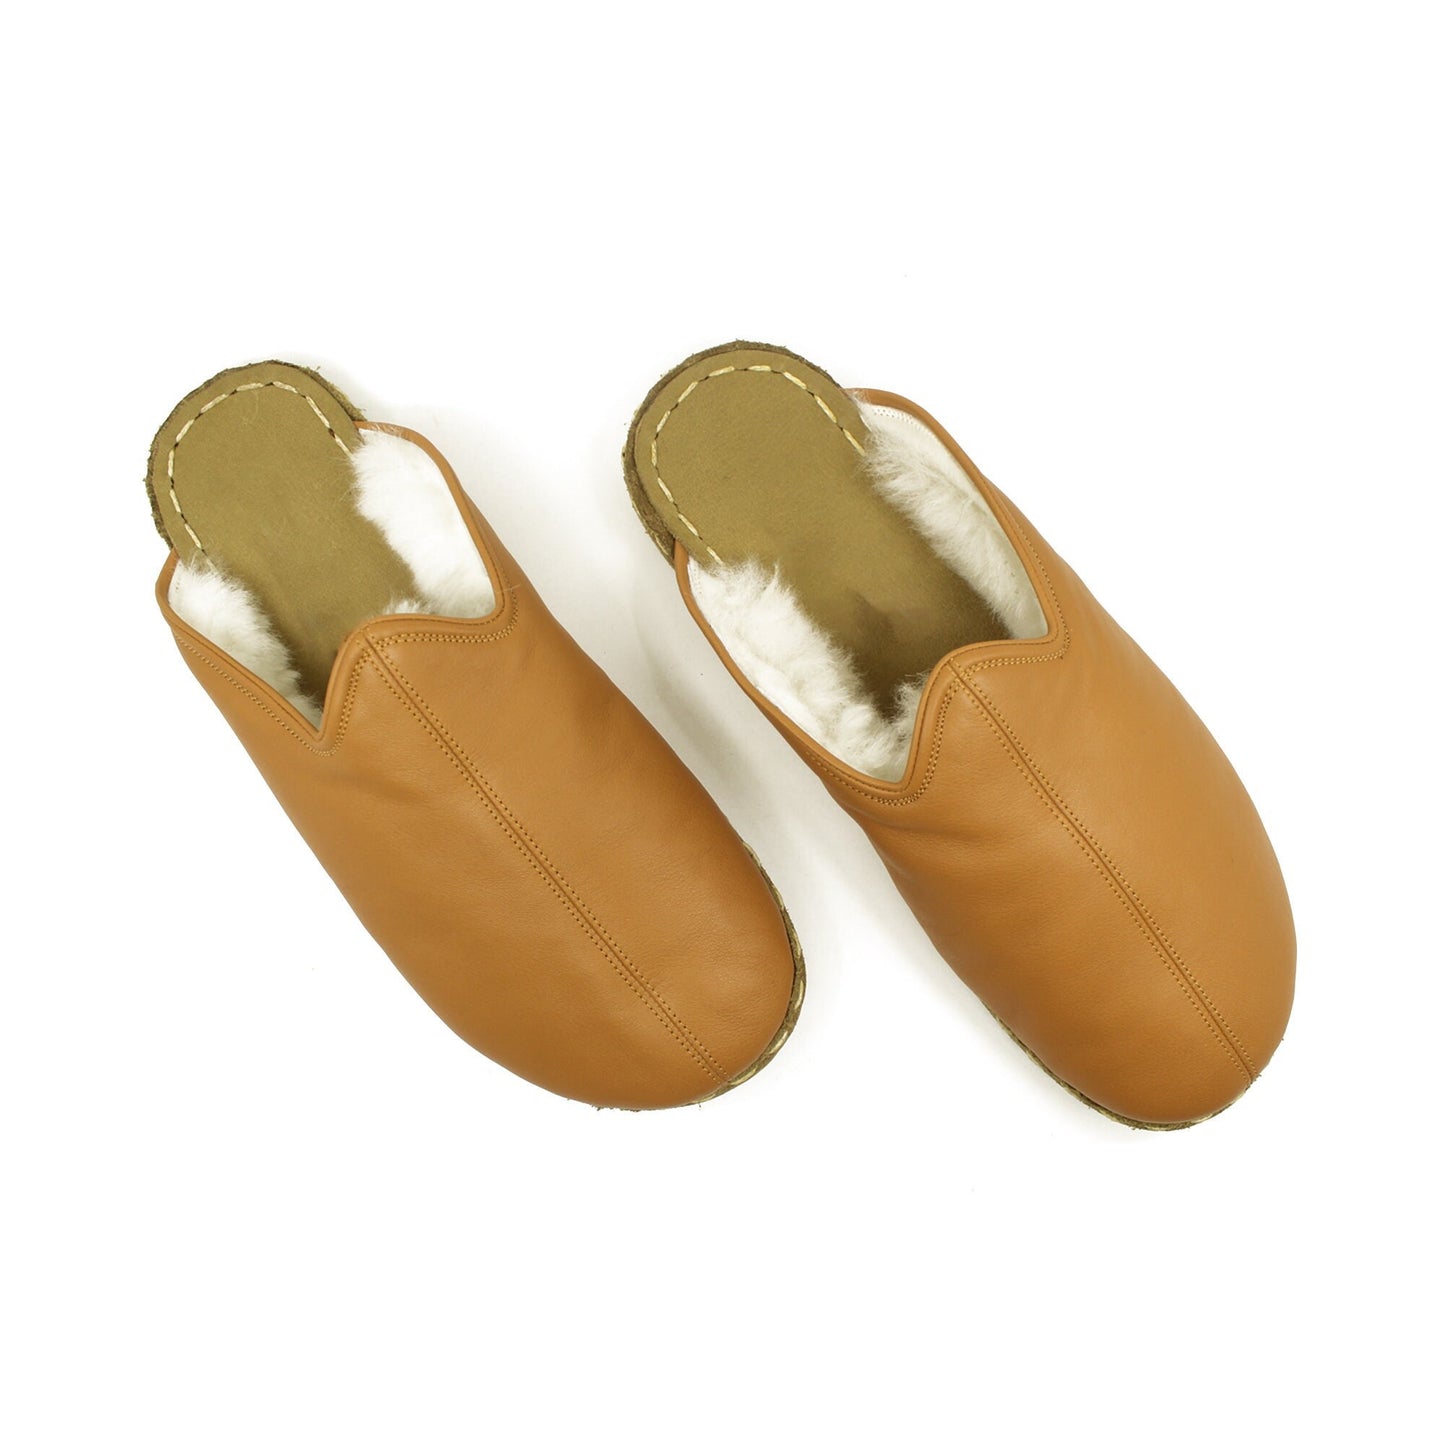 Sheepskin slippers - Winter Slippers - Barefoot Slipper - Close Toed Slippers - Light Brown Leather - Copper Rivet - For Women